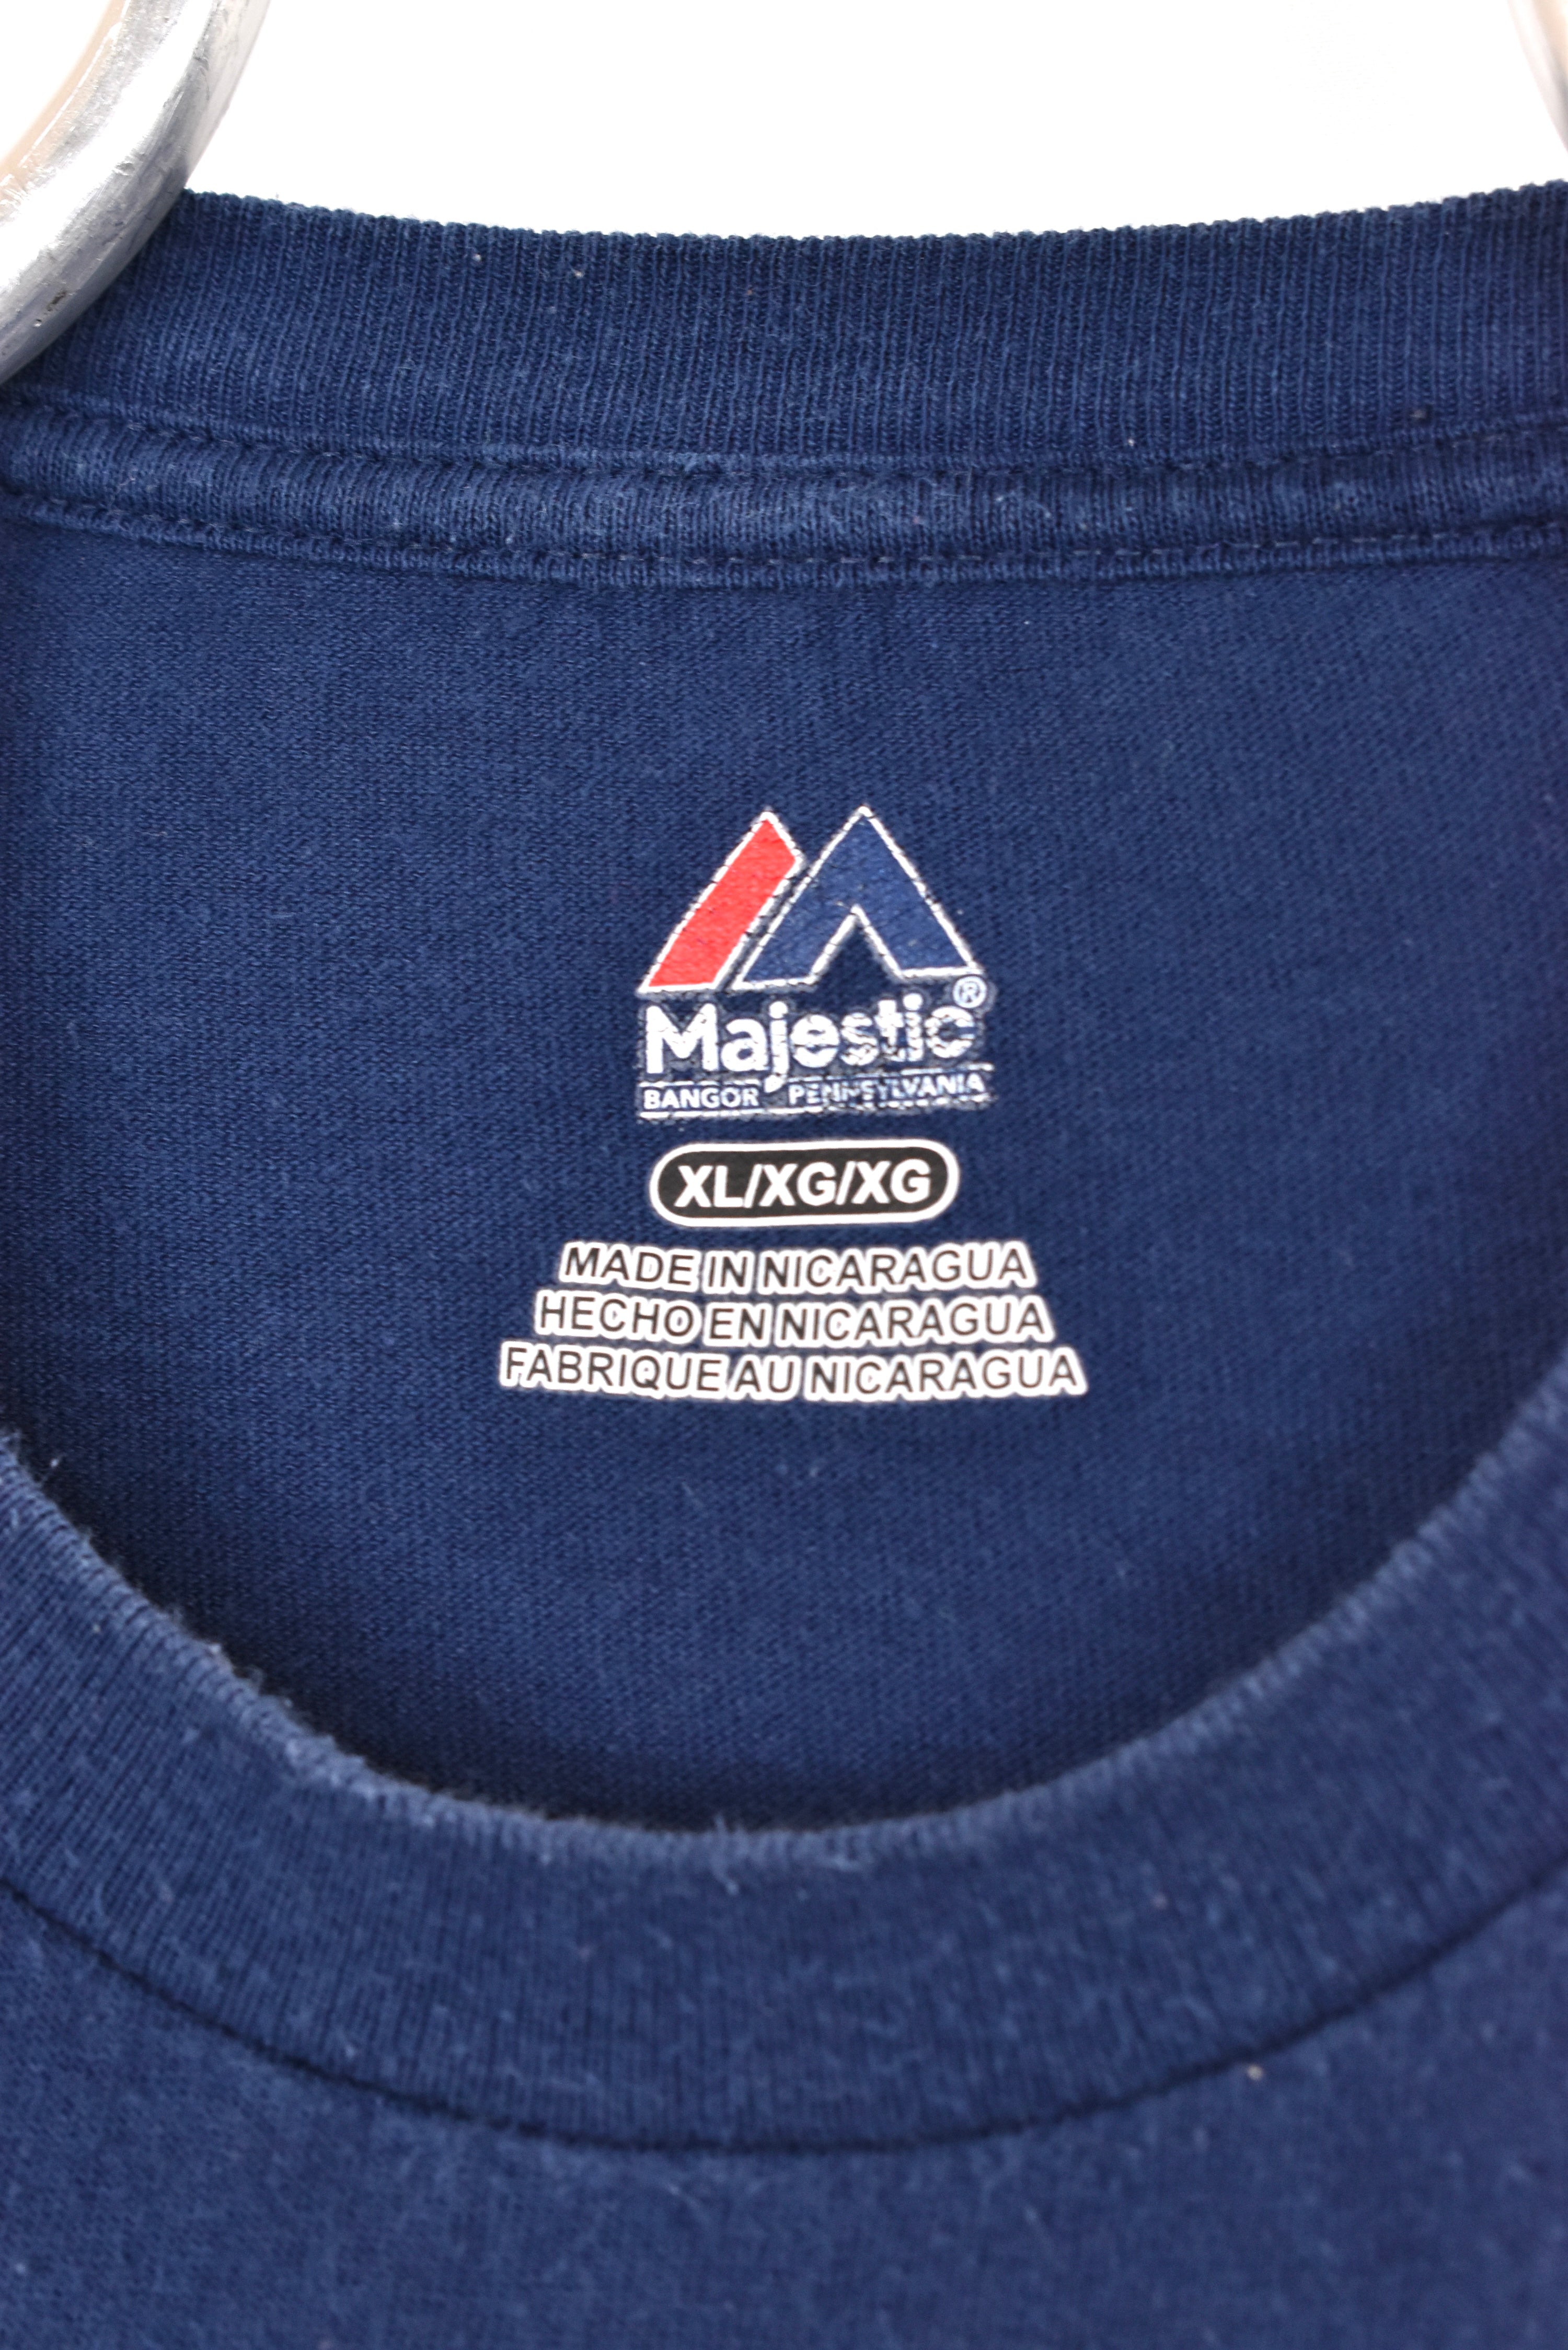 Vintage St. Louis Rams shirt, NFL navy blue graphic crewneck - AU XL PRO SPORT